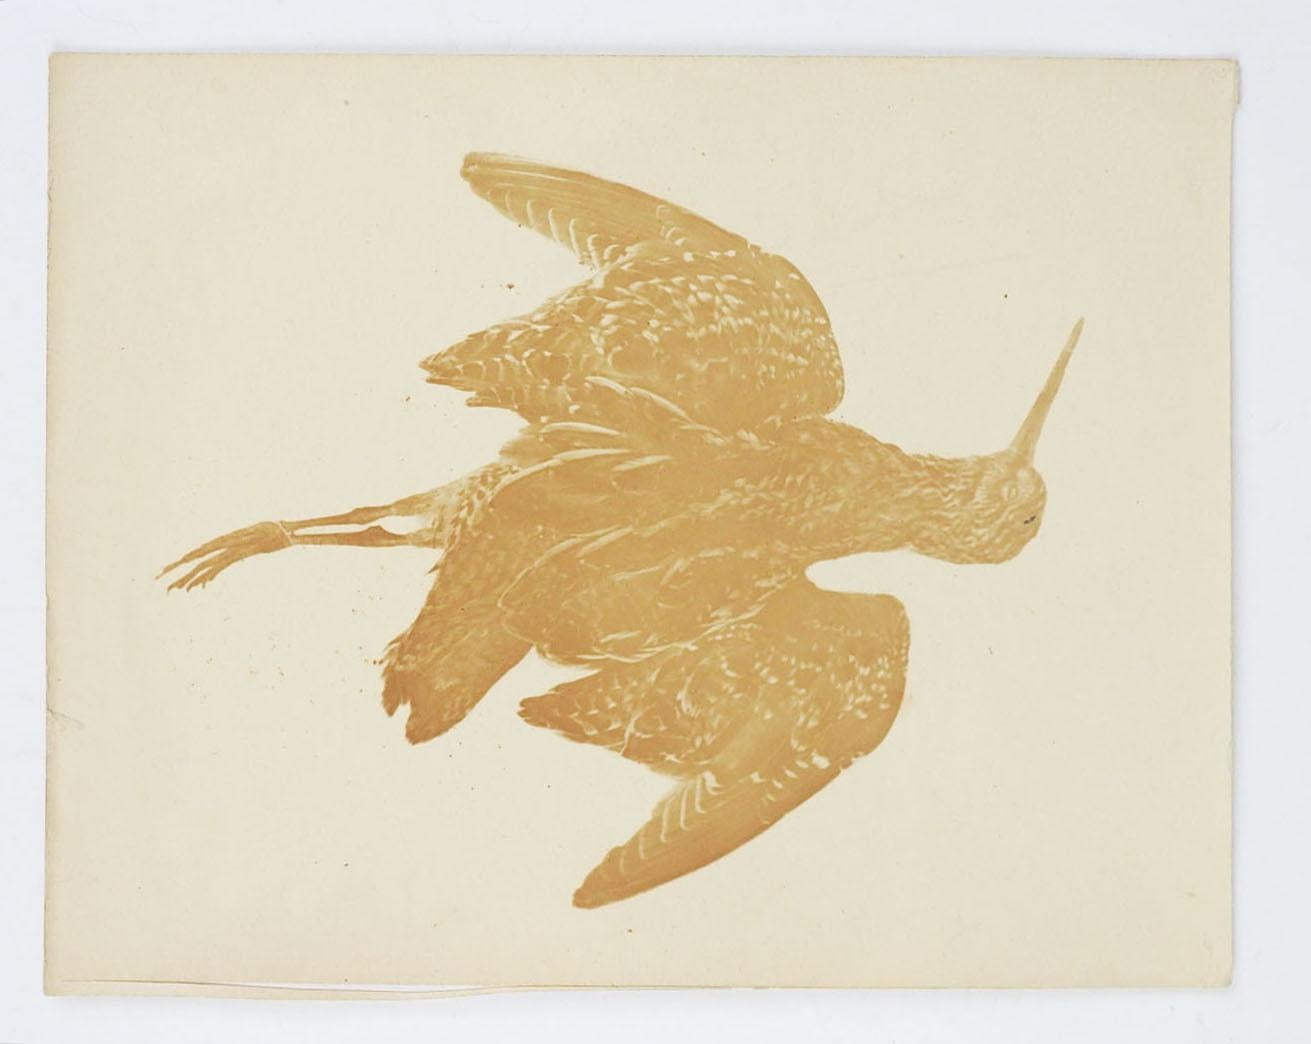 Ensemble de photographies vintage du début du 20e siècle d'oiseaux et de canards morts.  Probablement pris pour l'étude de l'histoire naturelle.  Non encadrées, la plus grande mesure 8